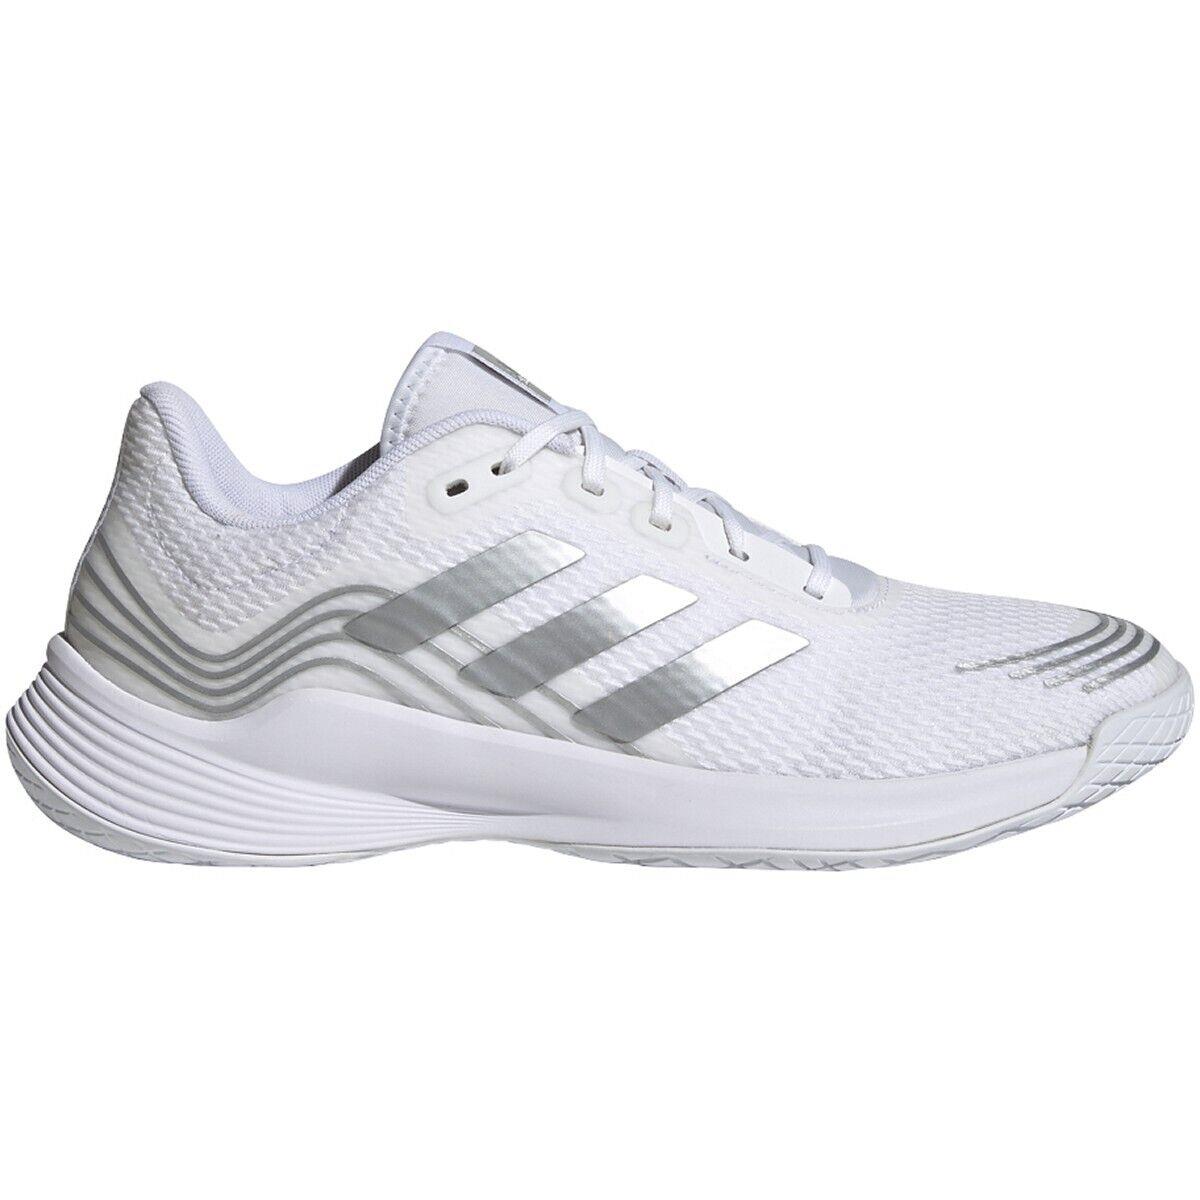 Adidas Women`s Novaflight Shoe - White/metallic Silver/white